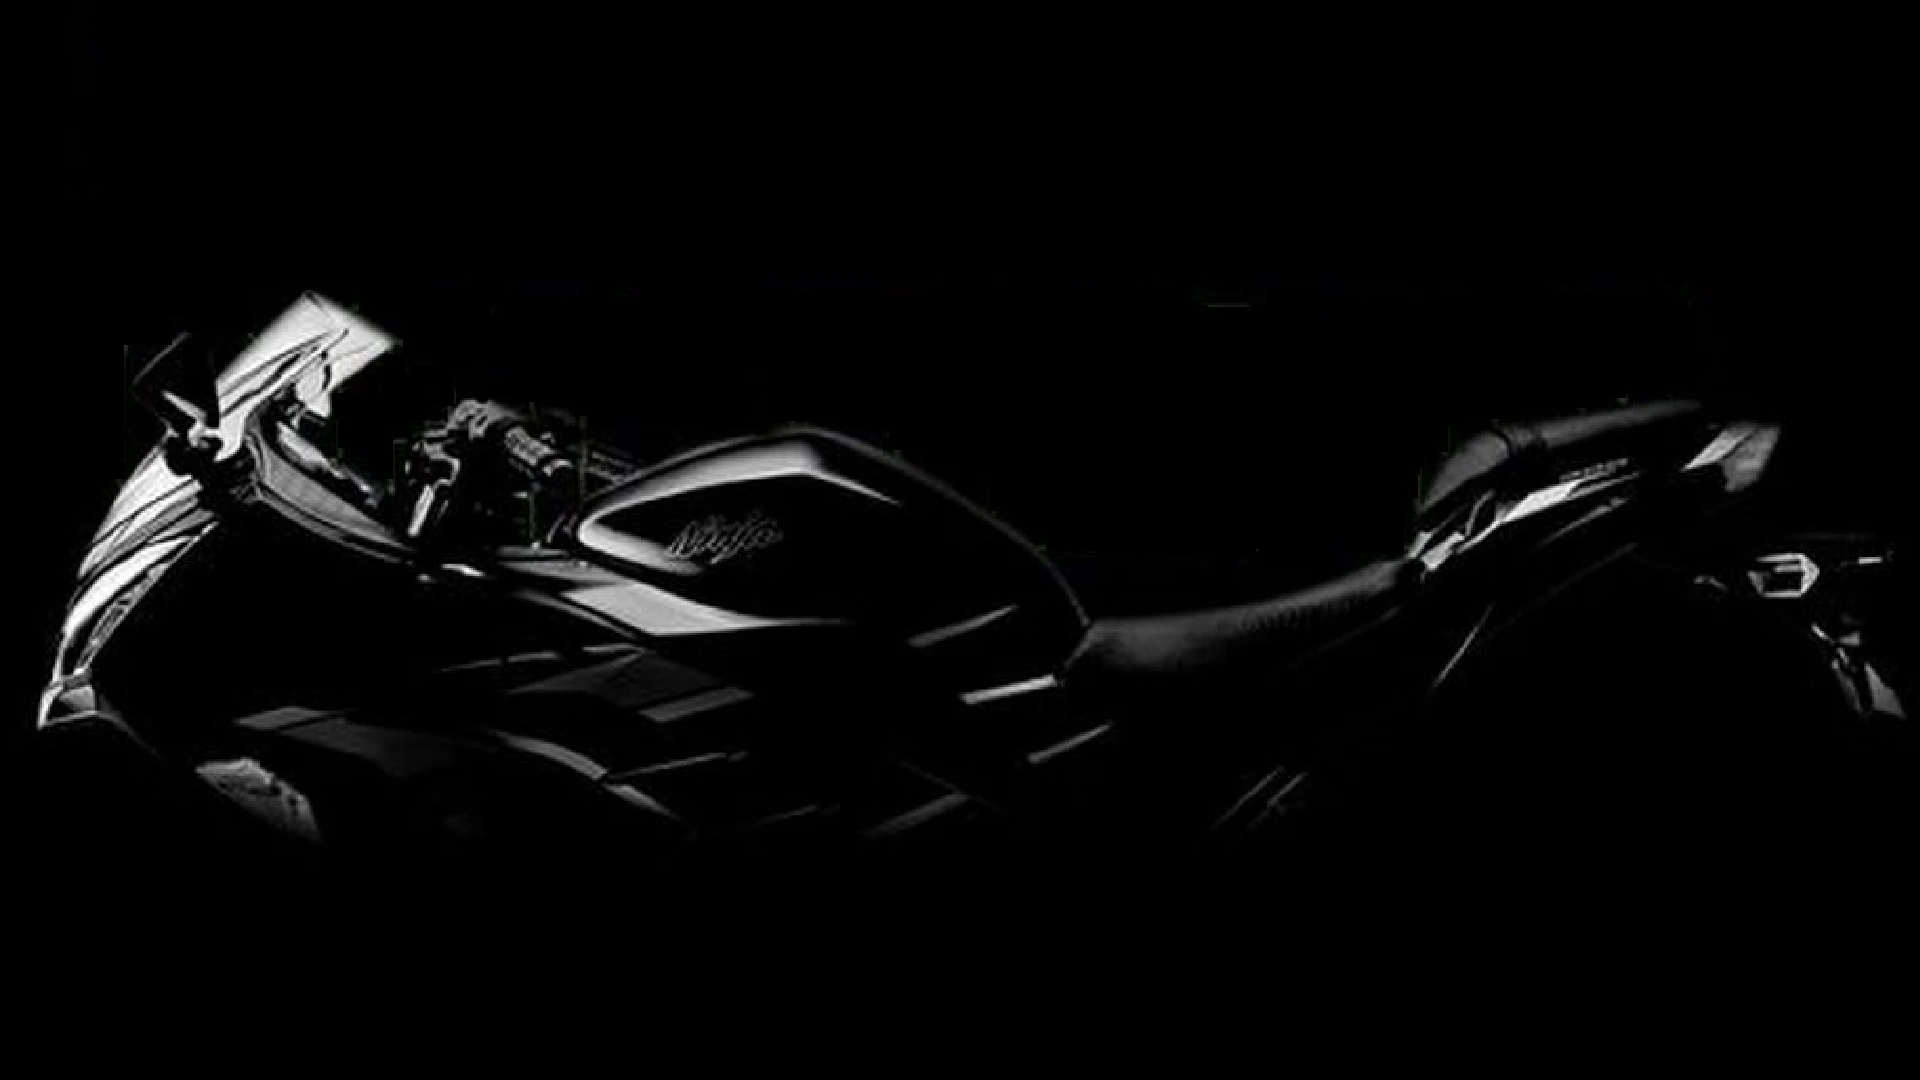 2022 Kawasaki Ninja 300 Teased In Fresh Black Shade